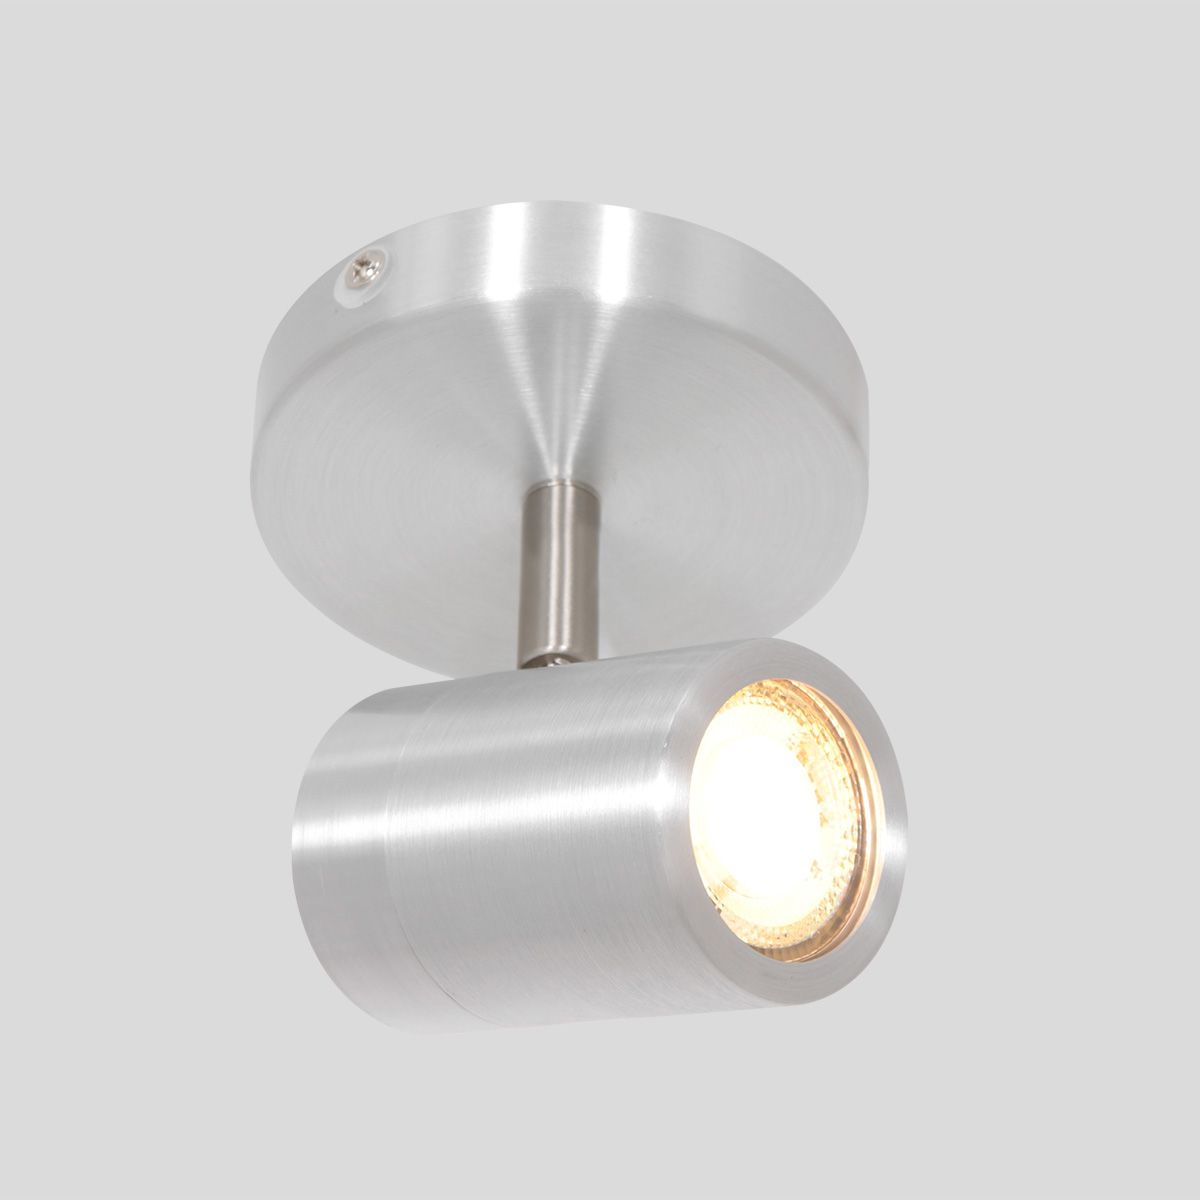 Spot-Up - loftlampe i metal i tre forskellige finish Metal - stål